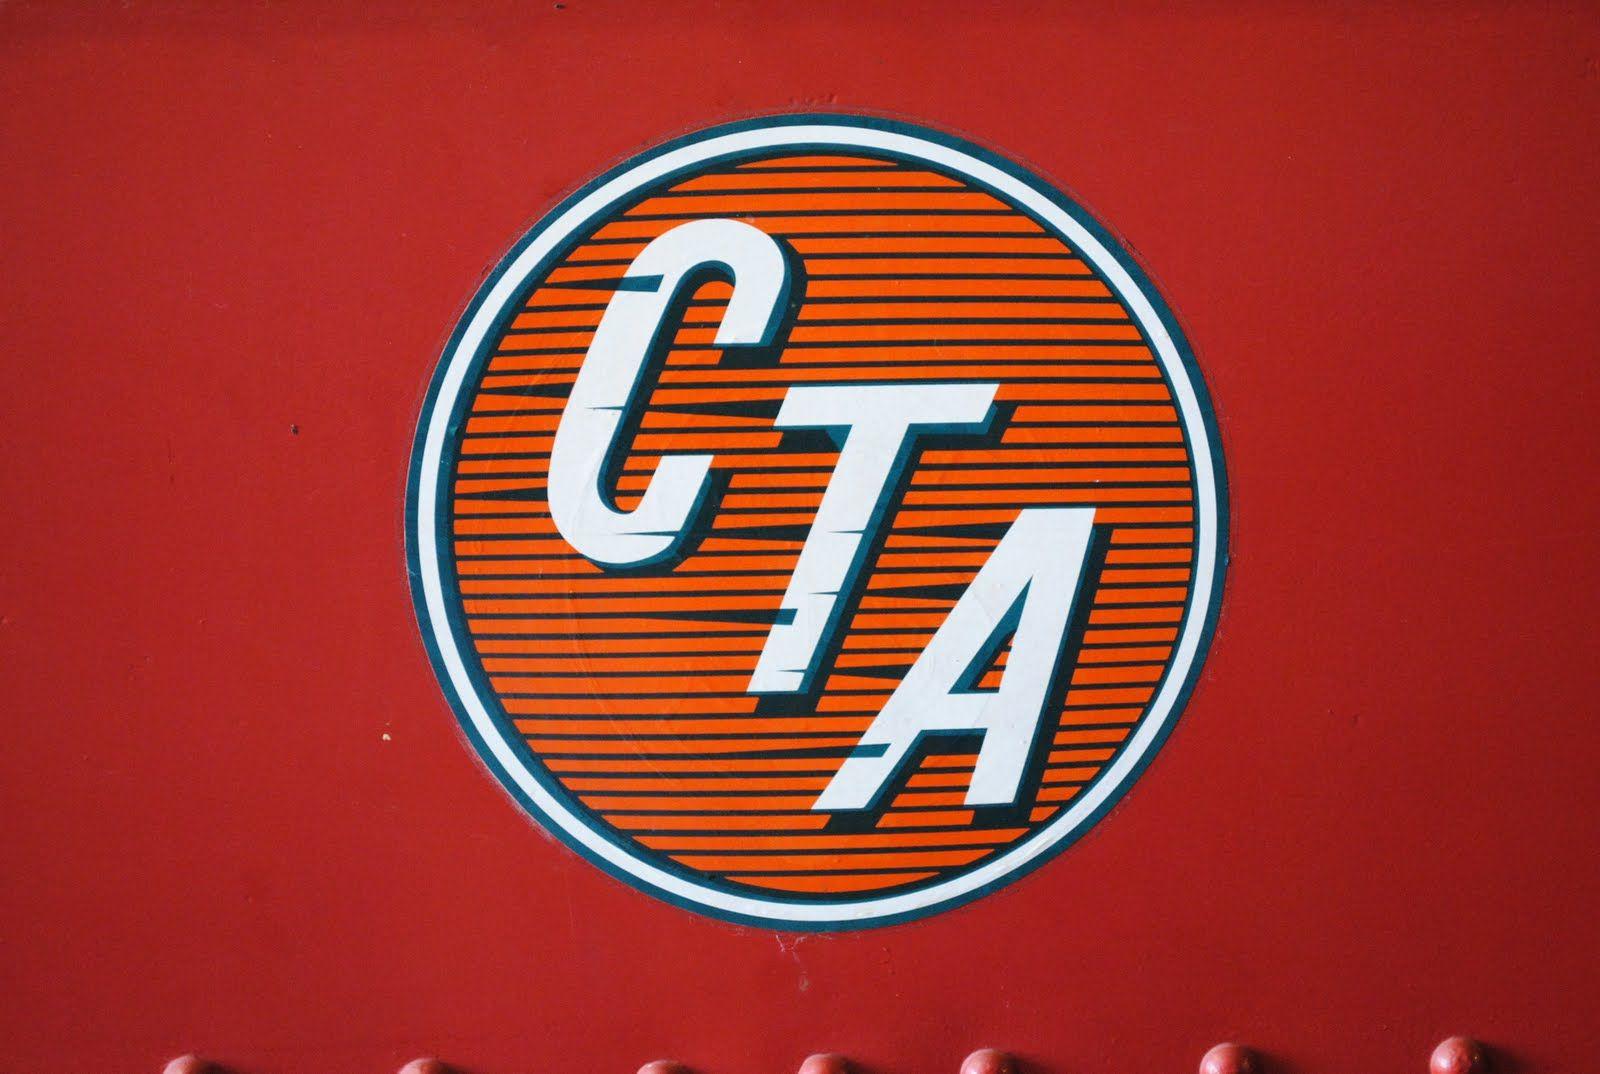 Chicago Transit Authority Logo - Old Chicago Transit Authority logo | Chicago transit authority ...